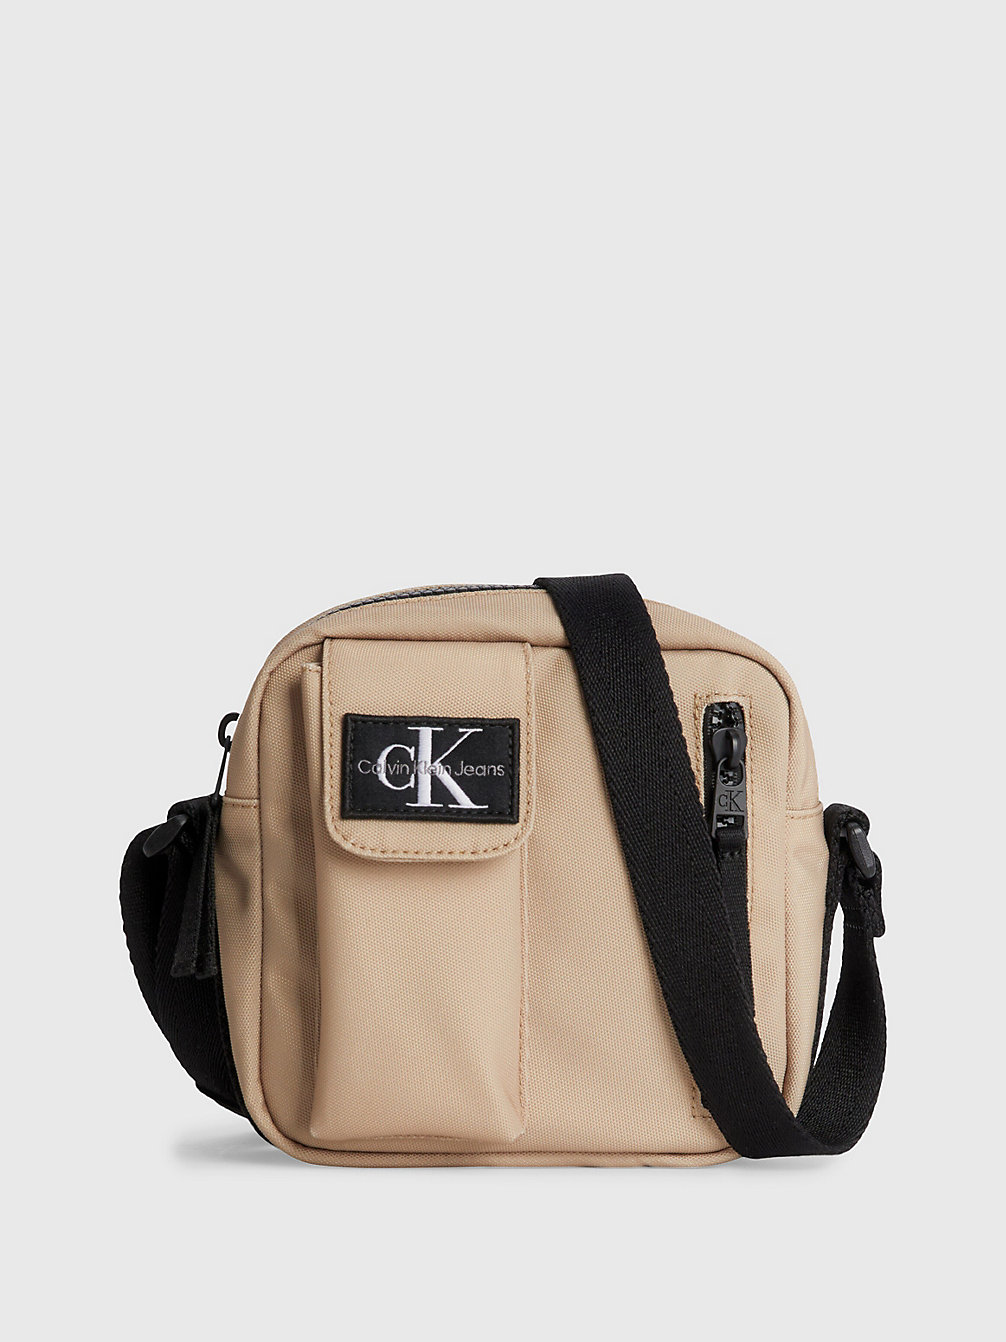 TRAVERTINE > Unisex Crossover Bag > undefined kids unisex - Calvin Klein